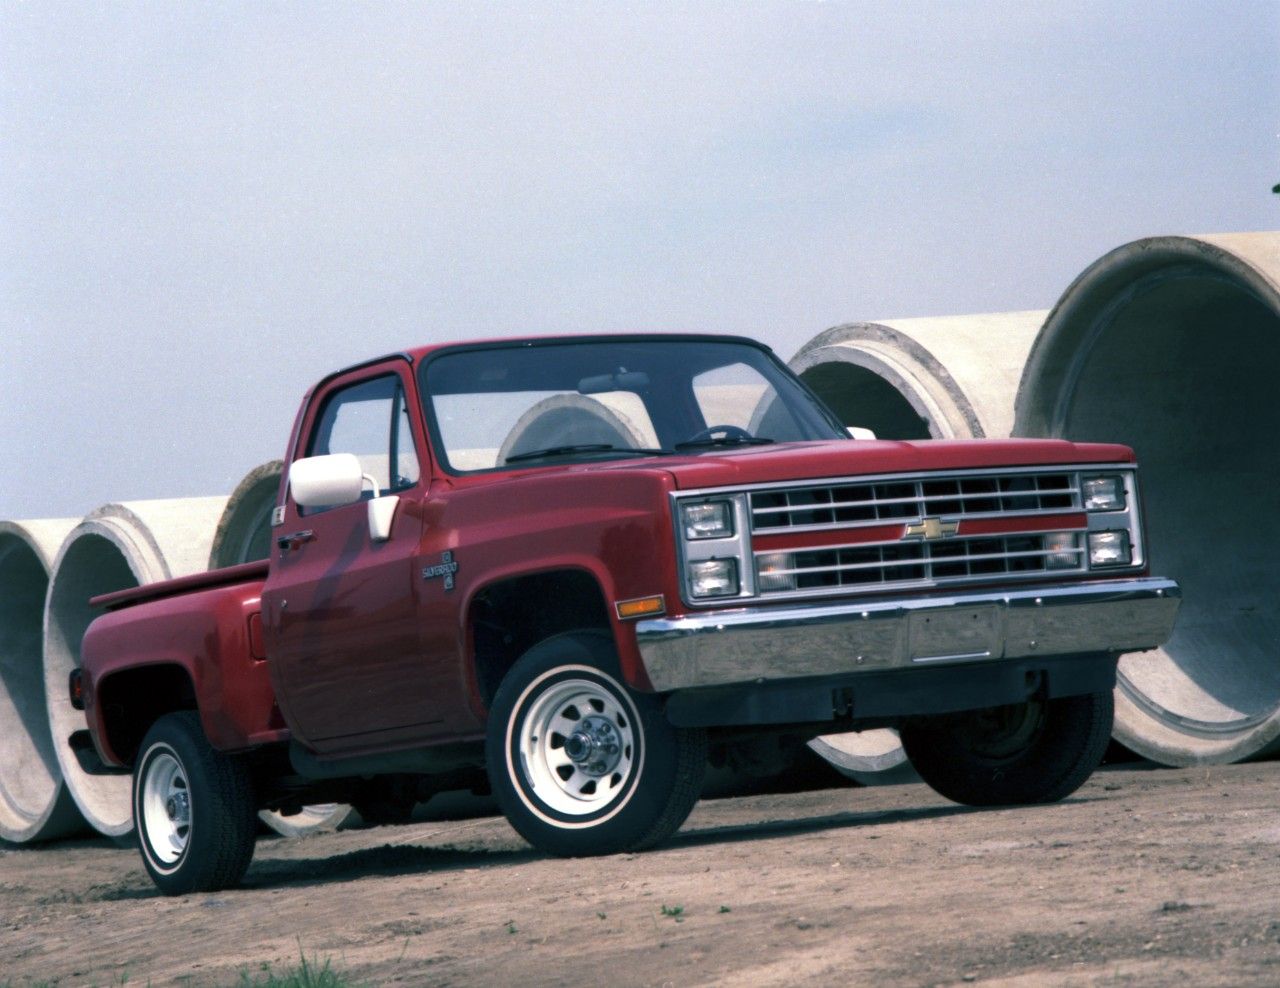 1987 Chevrolet C10 Silverado half-ton pickup with 305-cubic-inch